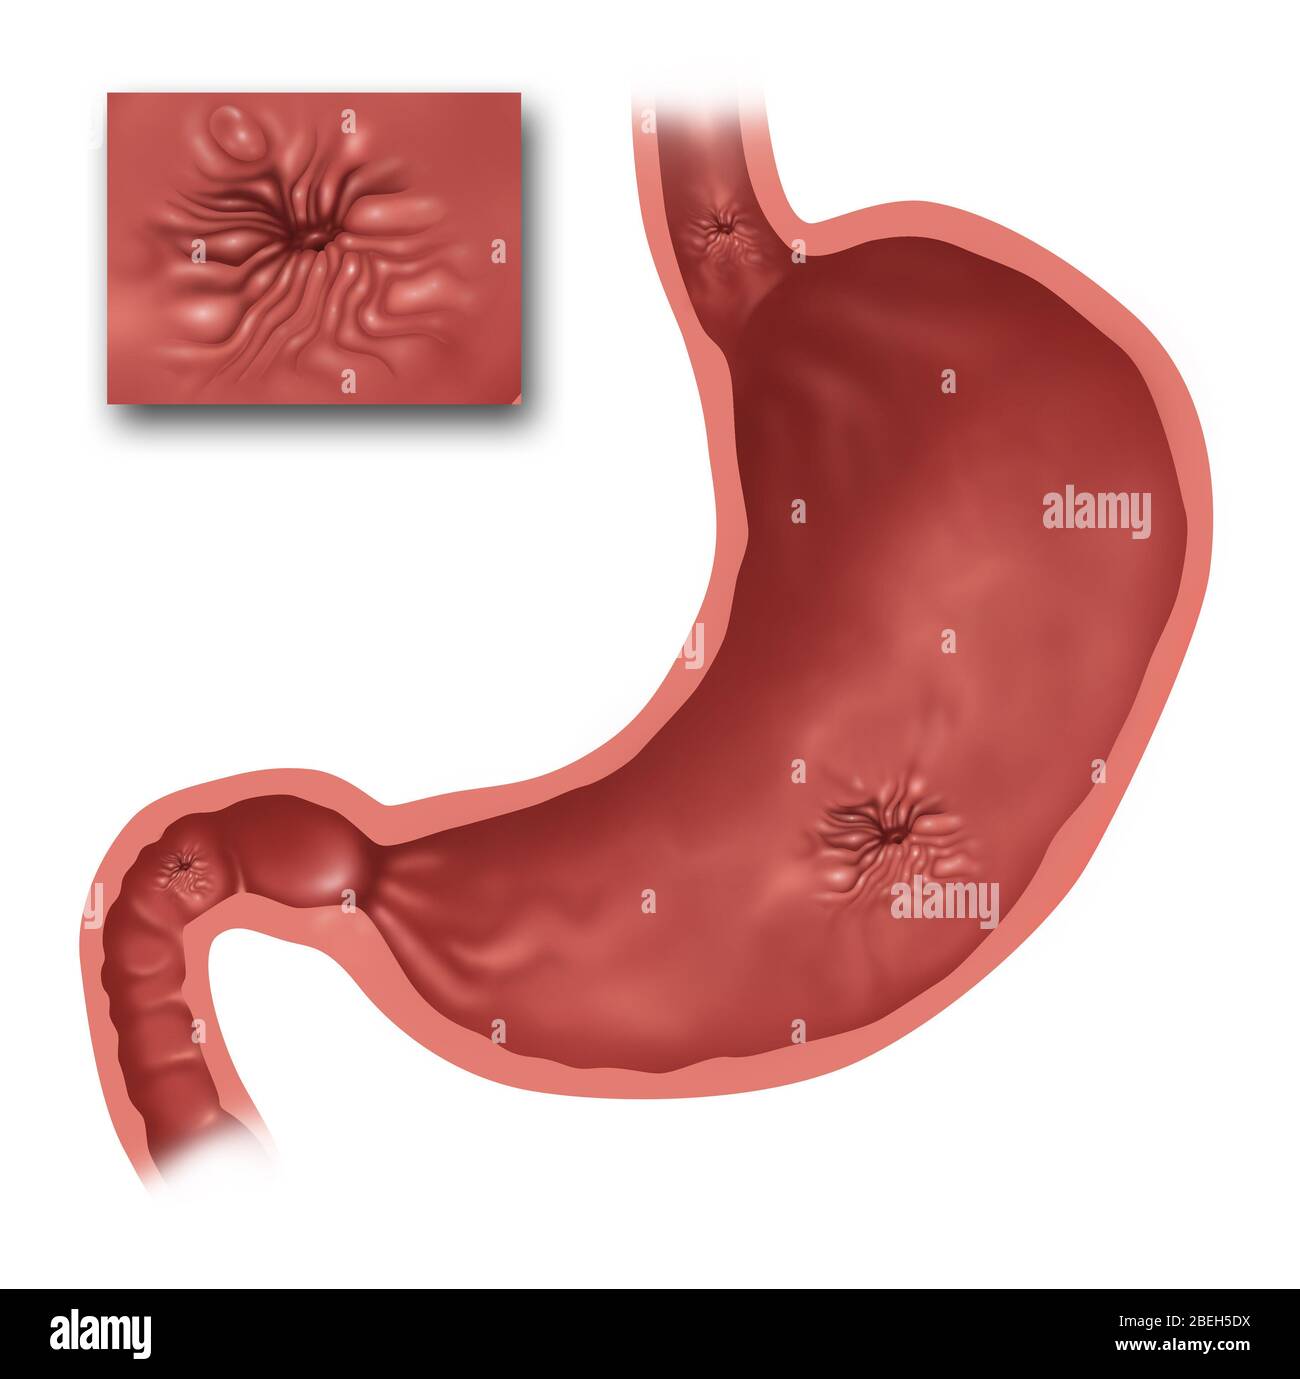 Illustrazione dello stomaco con diverse ulcere presenti. In alto c'è l'esofago e appena sotto si trova un'ulcera esofagea. Nello stomaco è presente un'ulcera gastrica, e in basso a sinistra è presente un'ulcera duodenale nell'intestino tenue. L'insetto è un primo piano di un'ulcera peptica. Foto Stock